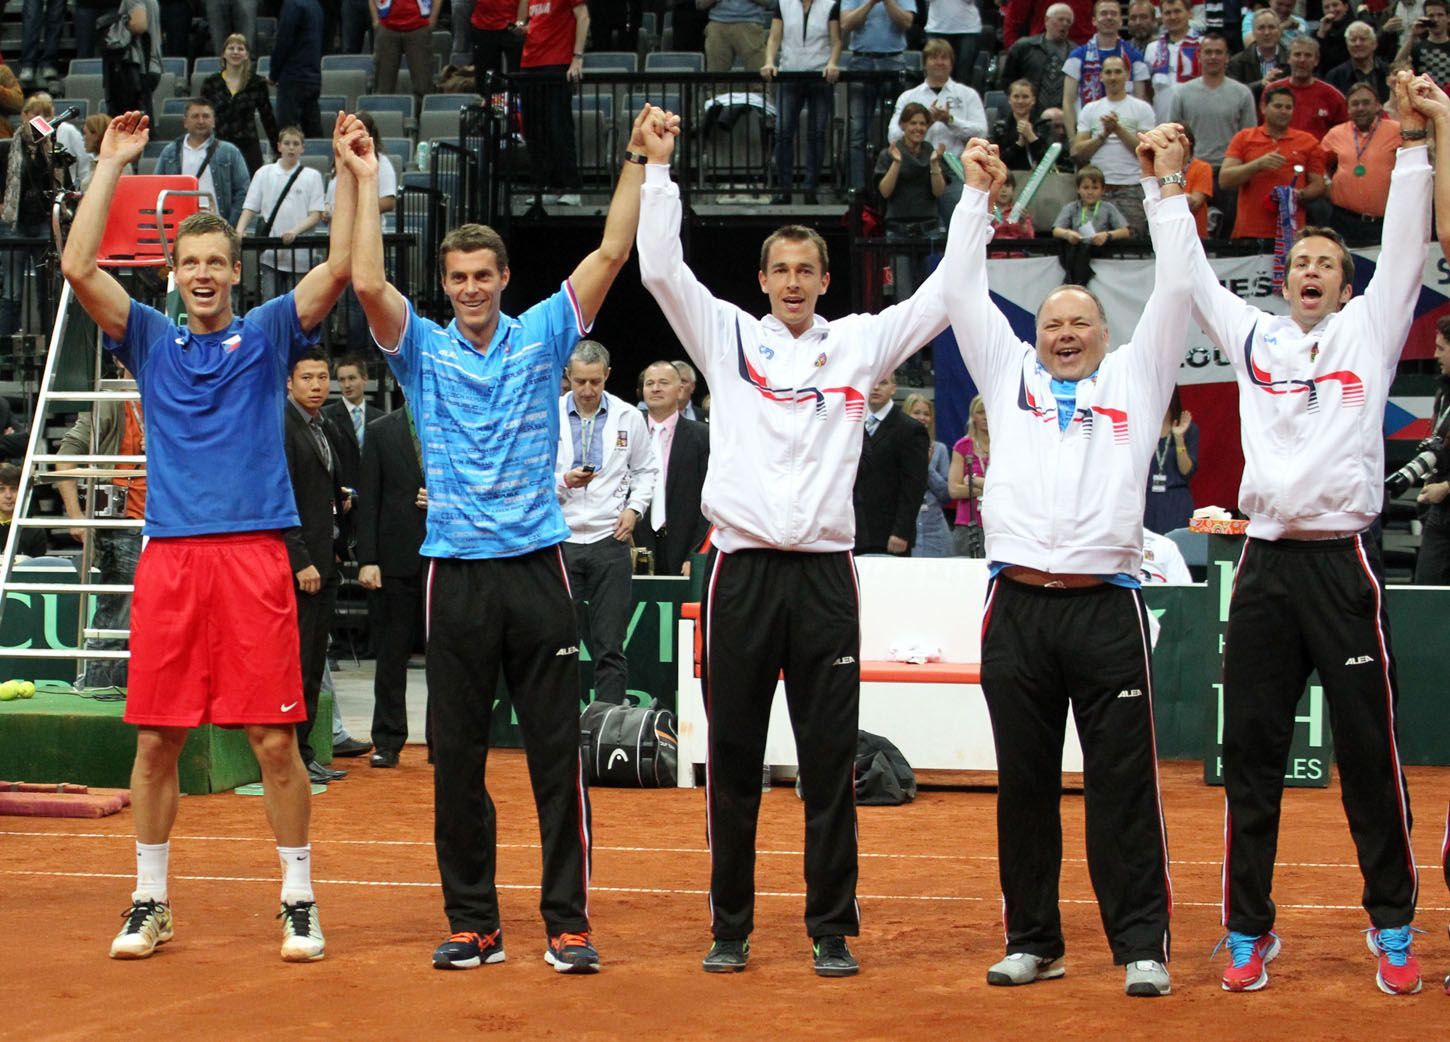 Davis Cup: Česko - Srbsko (Berdych, Čermák, Rosol, masér Pavel Kováč, Štěpánek, radost)